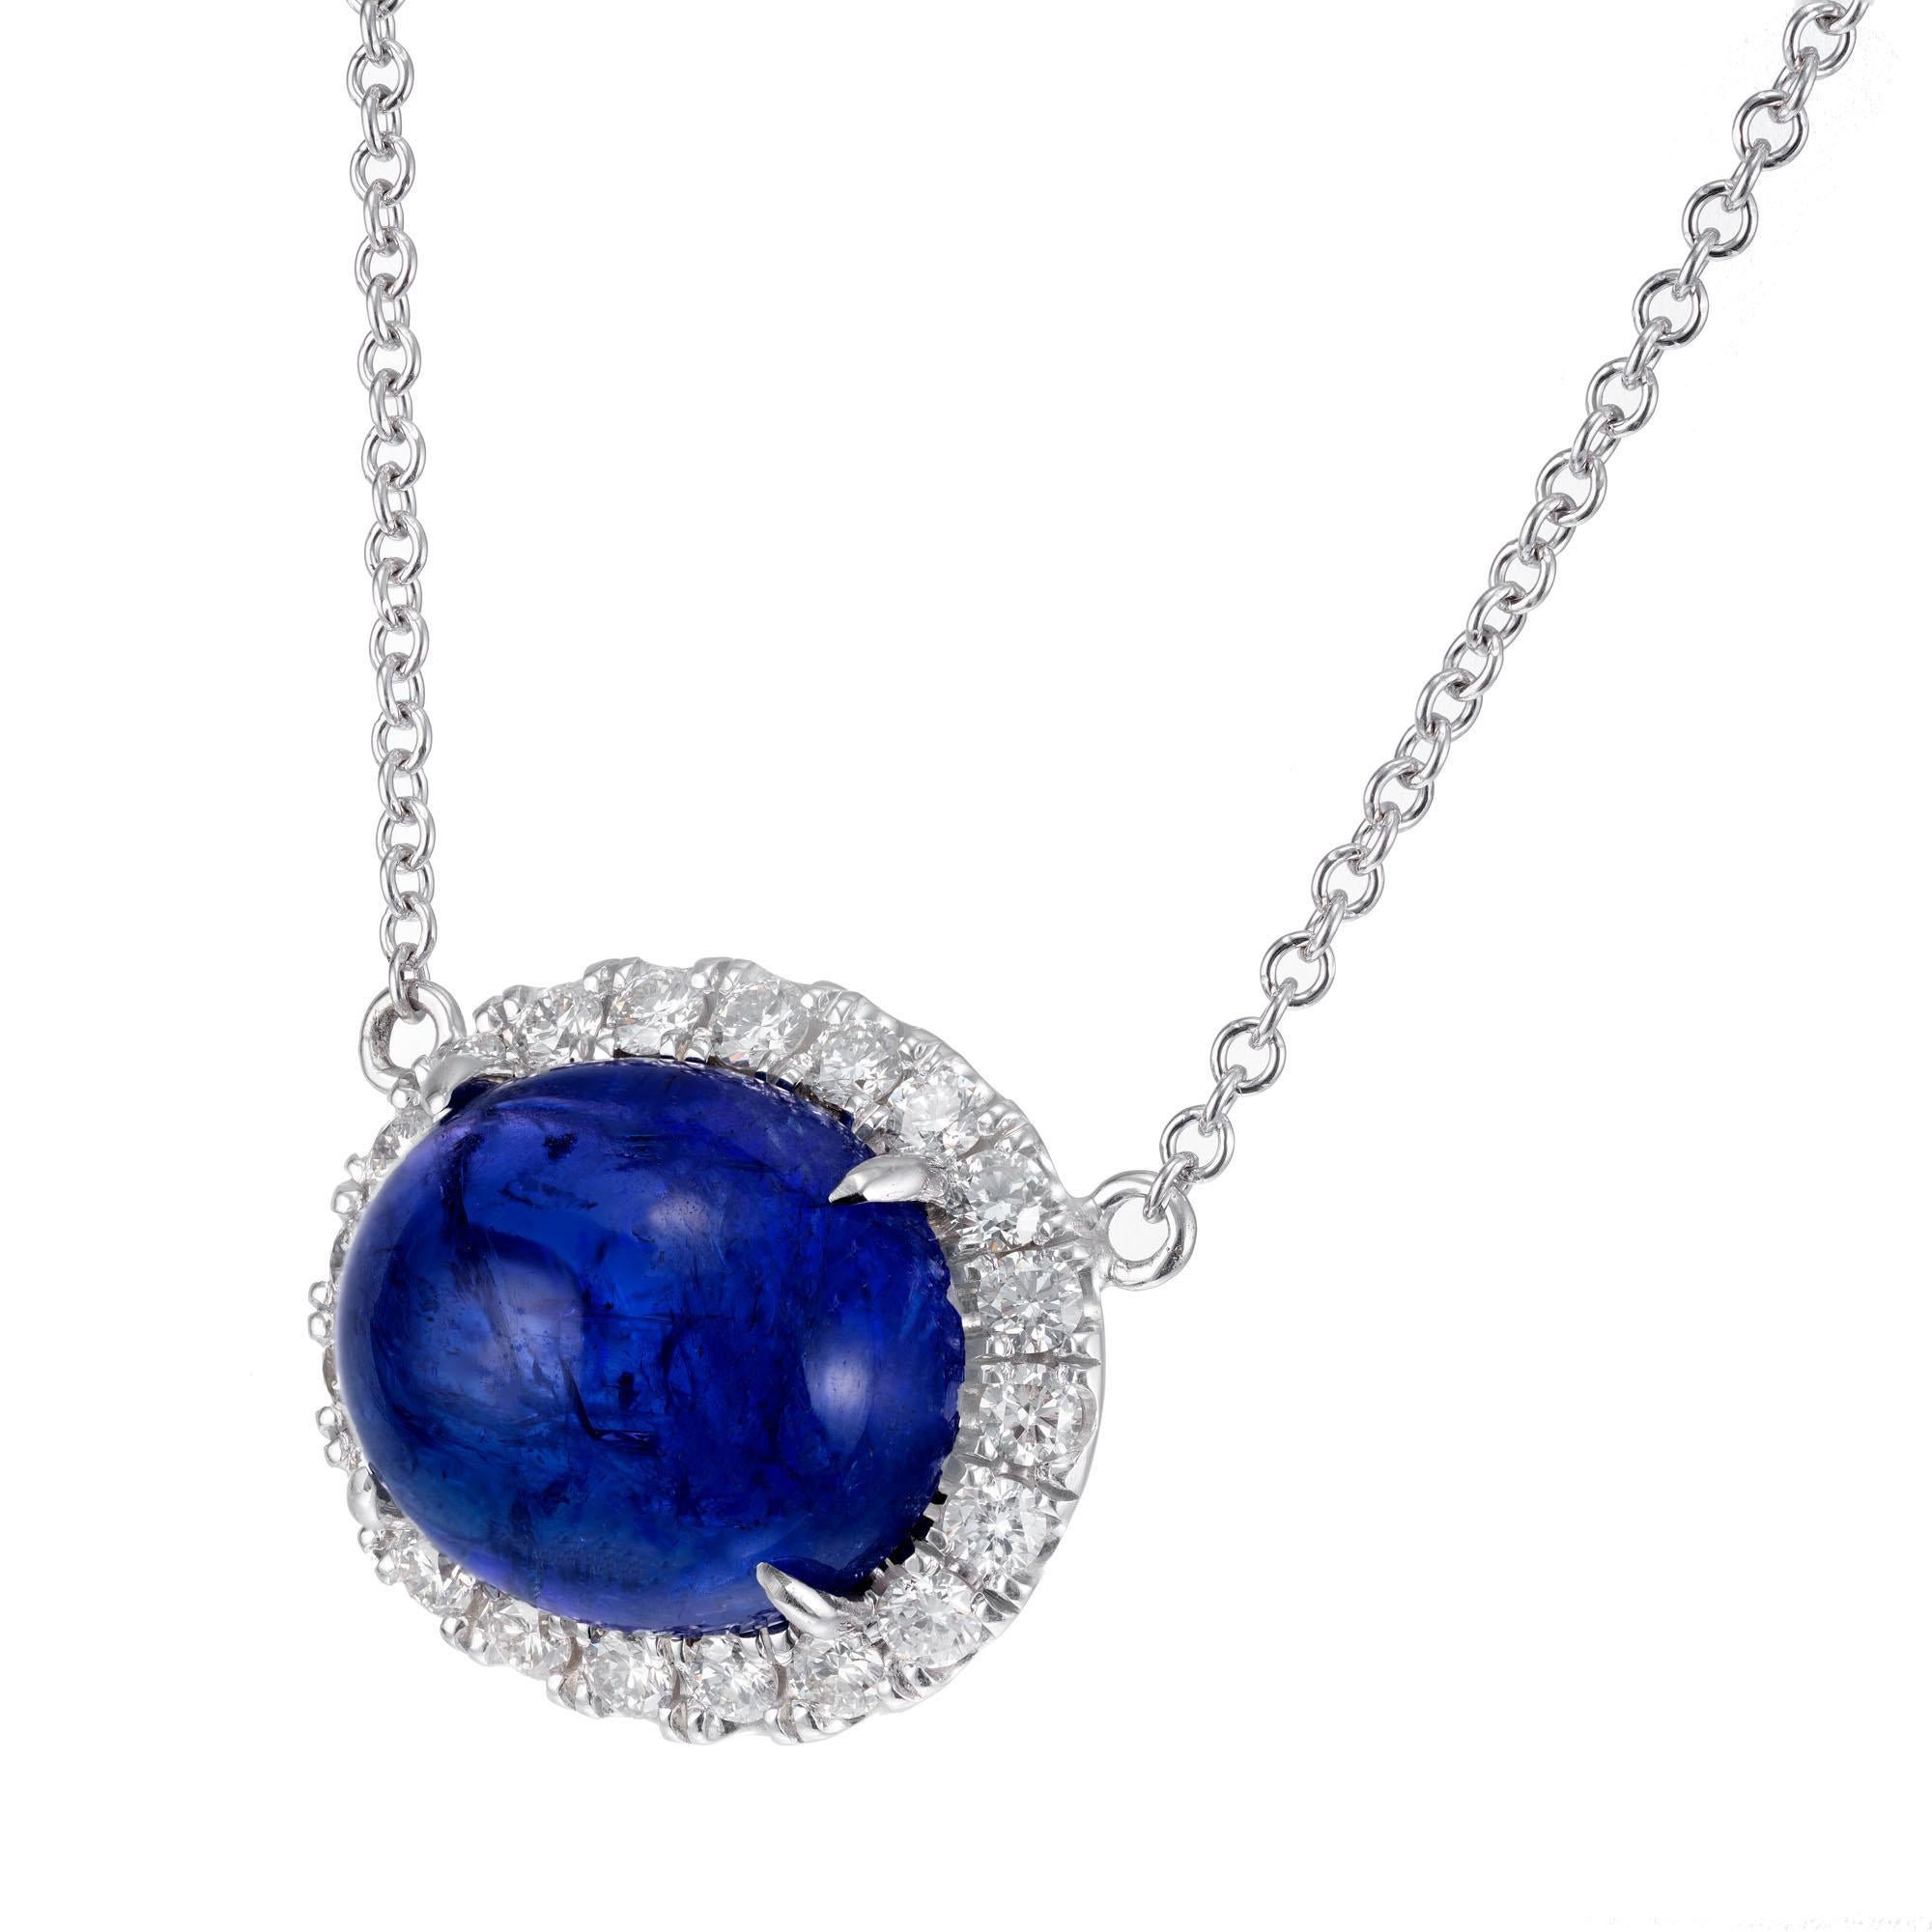 Collier pendentif en tanzanite et diamant d'un bleu éclatant. La pierre centrale ovale cabochon de 8,00 carats avec des tons bleus et violets est entourée d'un halo de diamants taillés en brillant. Chaîne de 18 pouces en or blanc 18k. Créé dans